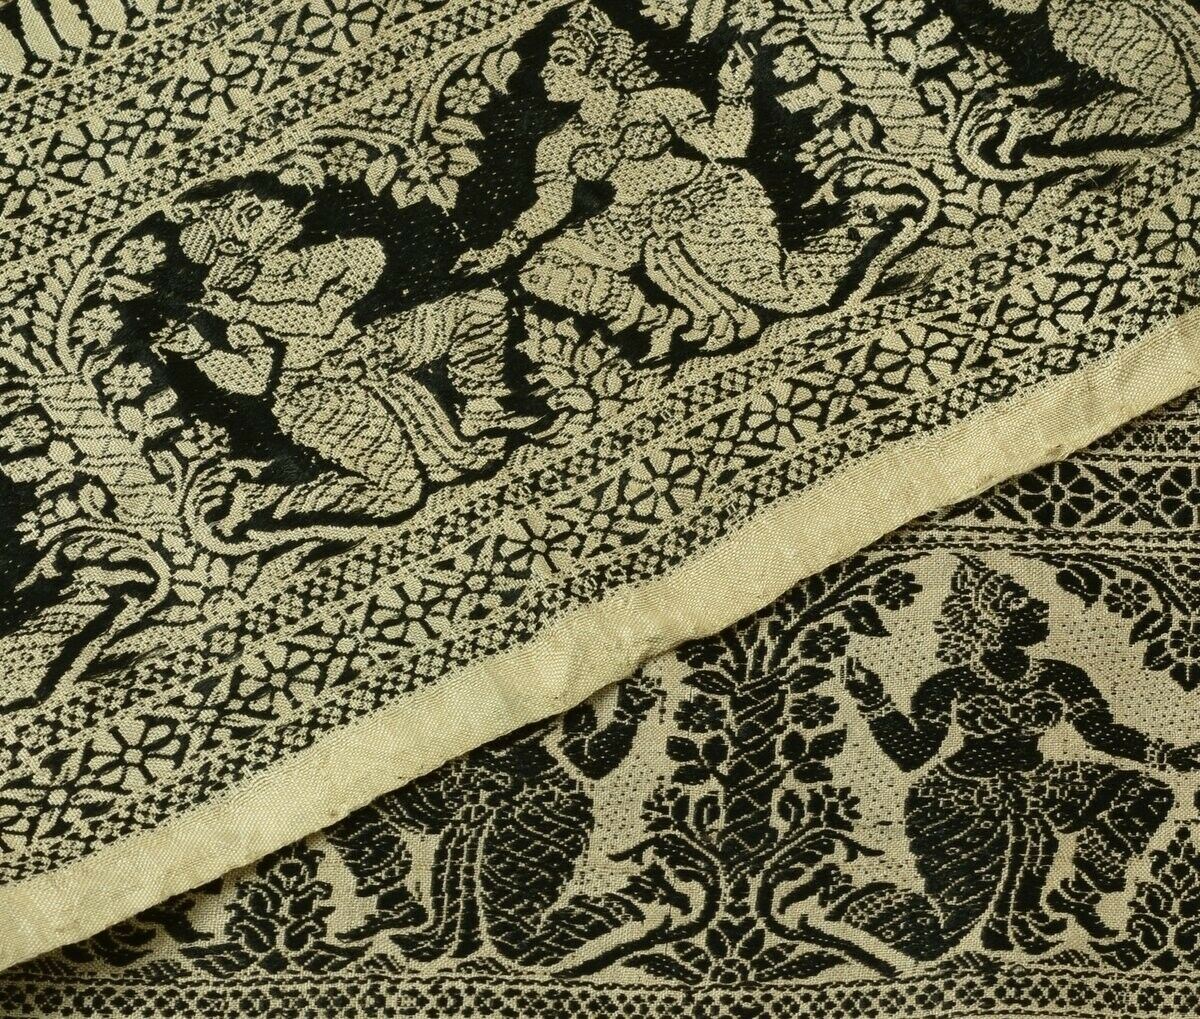 Vintage Sari Border Indian Craft Trim Woven Baluchari Sewing Ribbon Lace